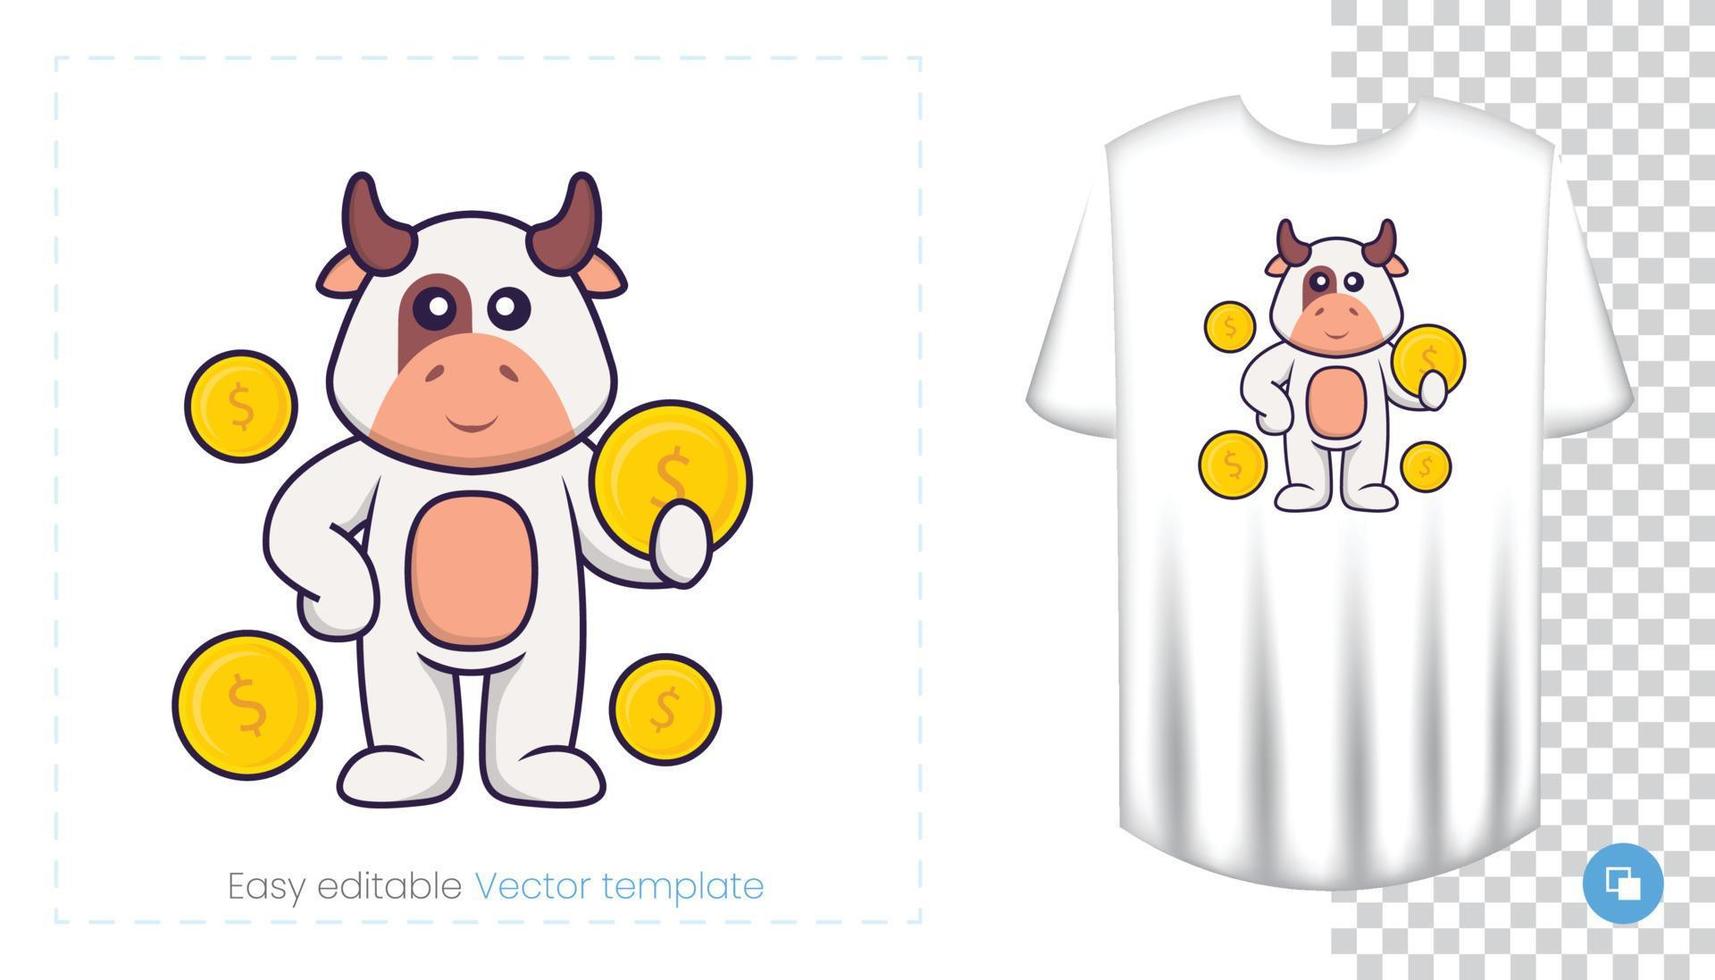 lindo personaje de vaca. estampados en camisetas, sudaderas, fundas para móviles, souvenirs. Ilustración de vector aislado sobre fondo blanco.